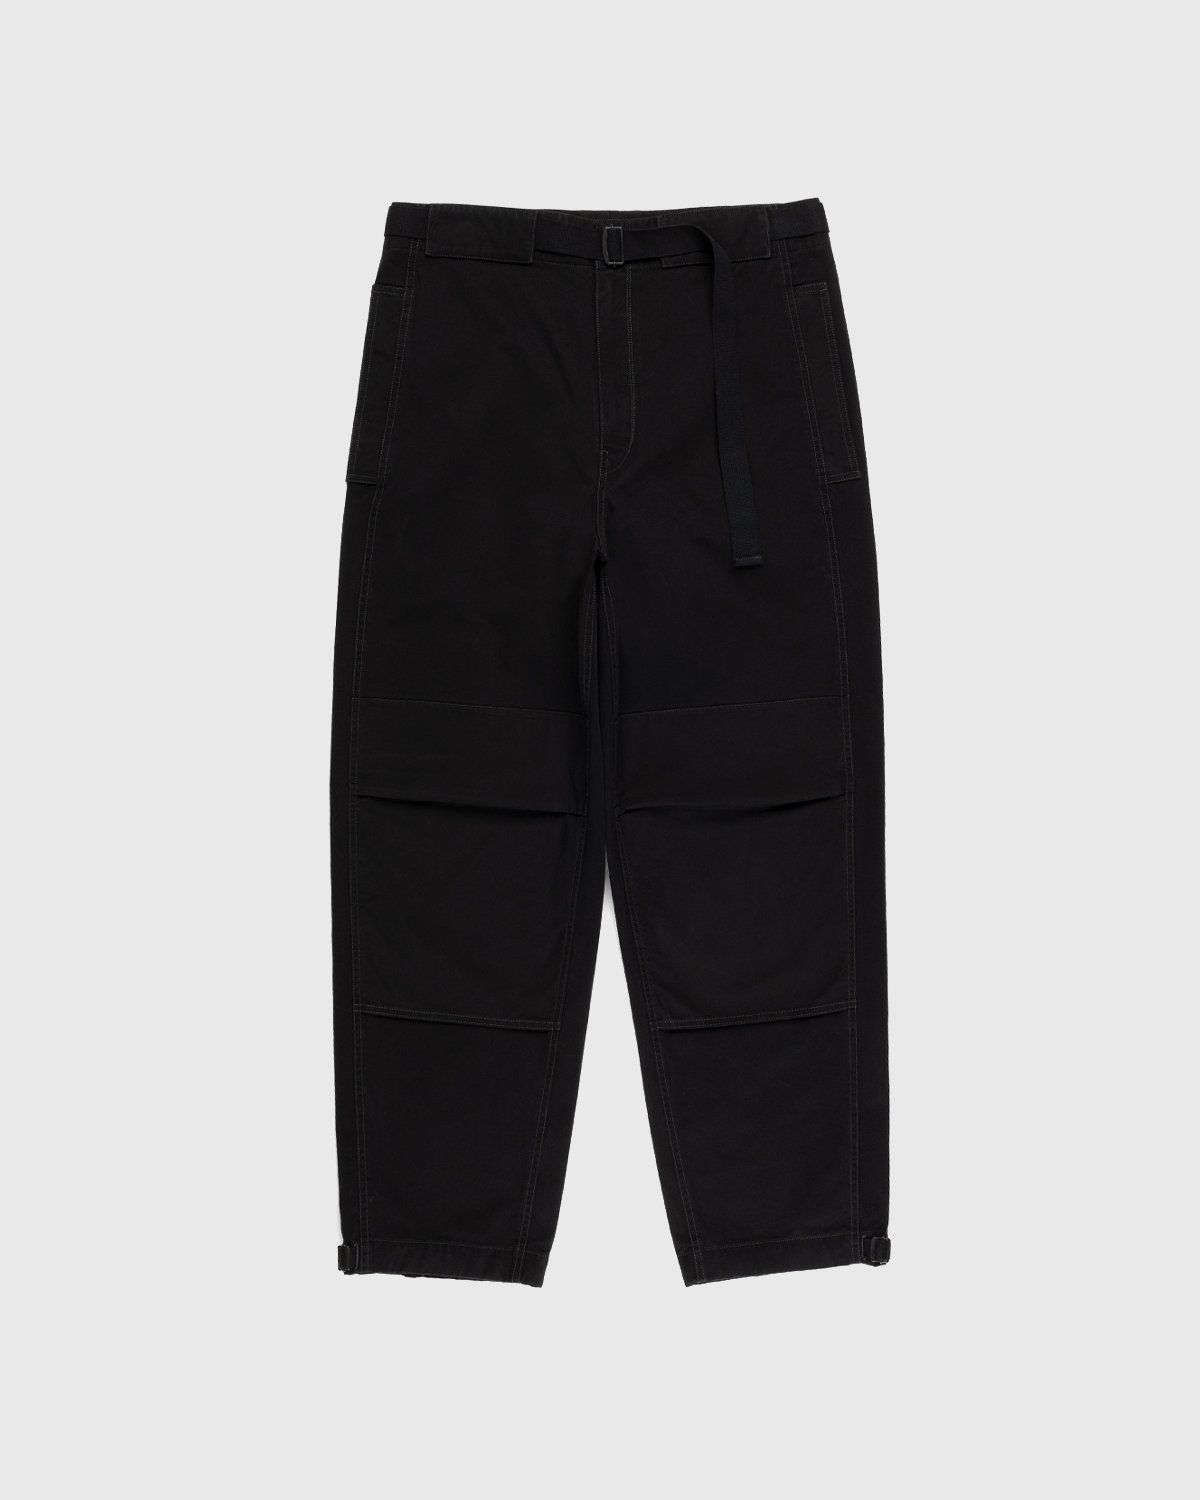 Lemaire – Utility Pants Black - Image 1